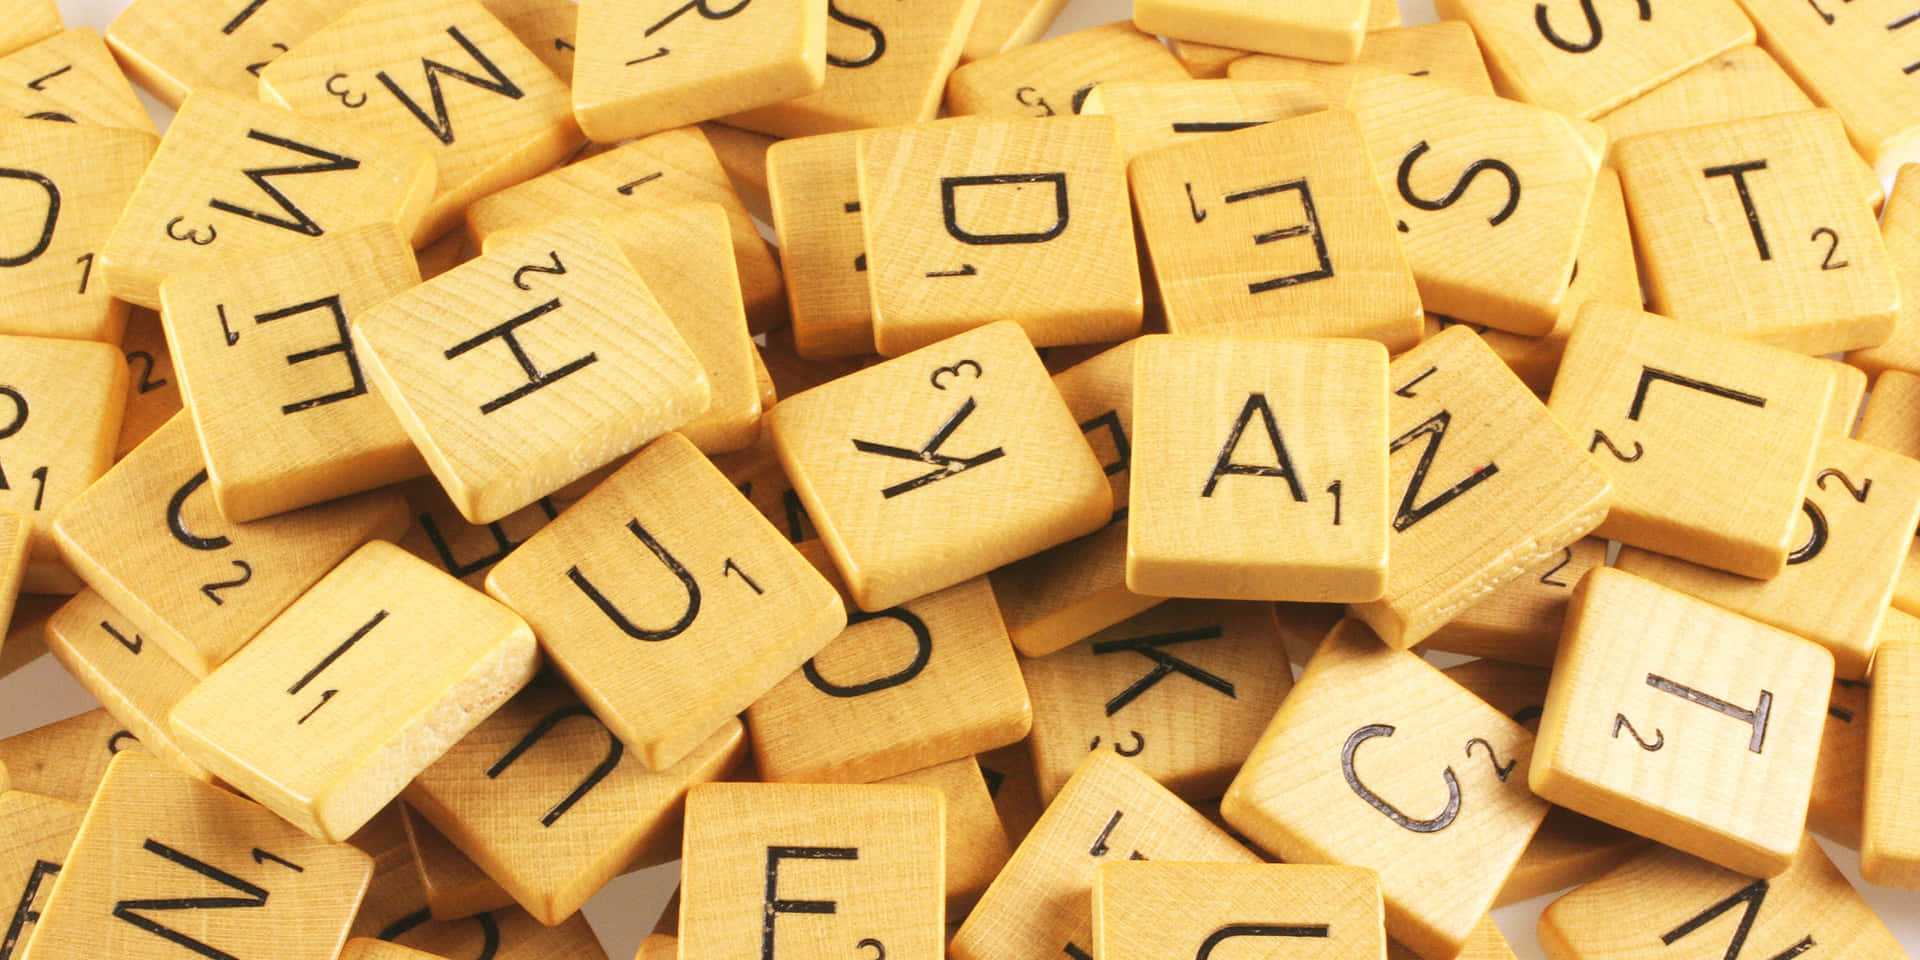 Letteredi Scrabble Su Tessere Di Legno